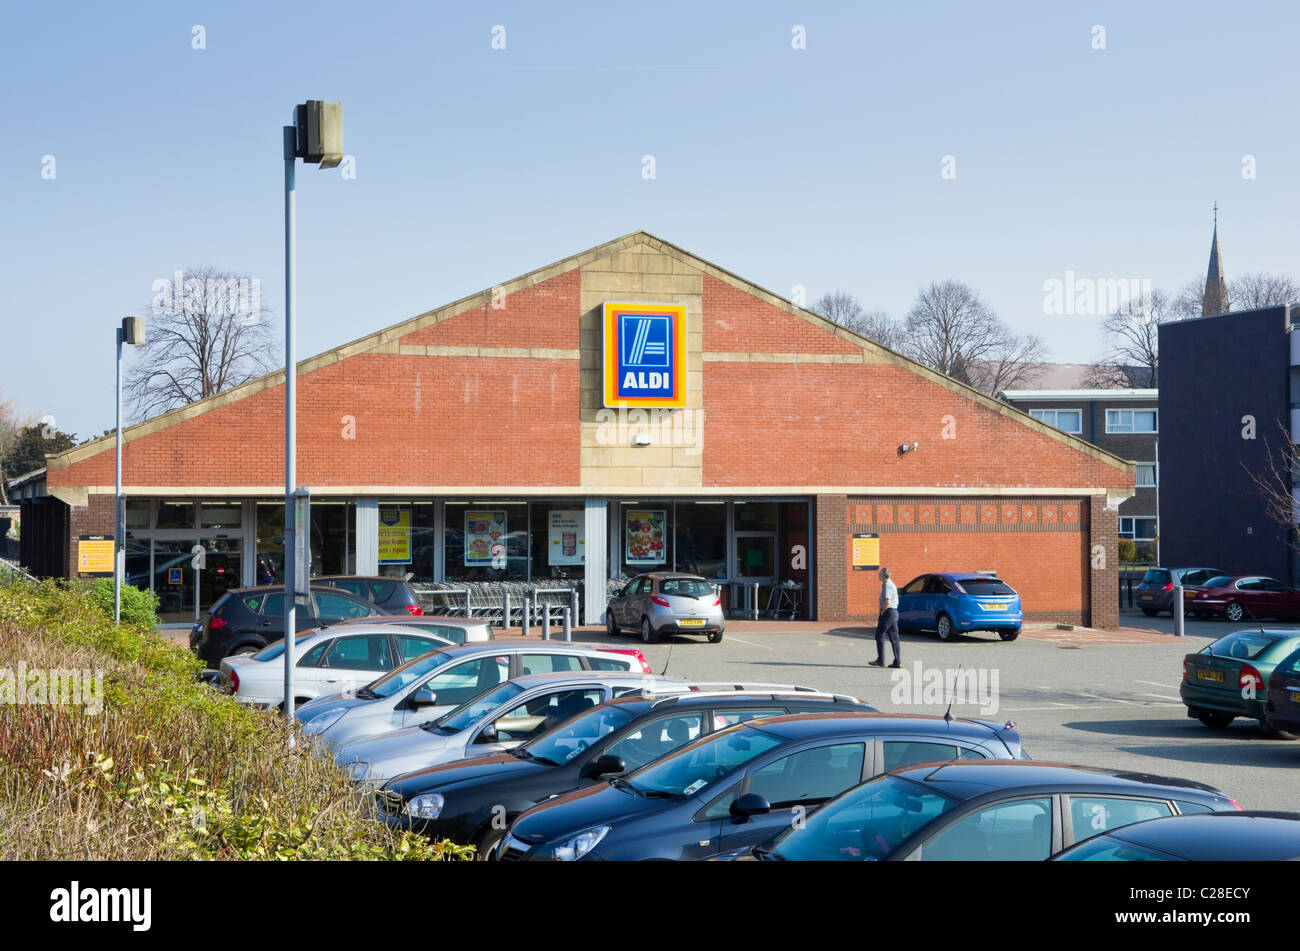 Aldi magasin avant avec des voitures à l'extérieur parking supermarché vendant à un prix avantageux. Bangor, Gwynedd, au nord du Pays de Galles, Royaume-Uni, Angleterre. Banque D'Images